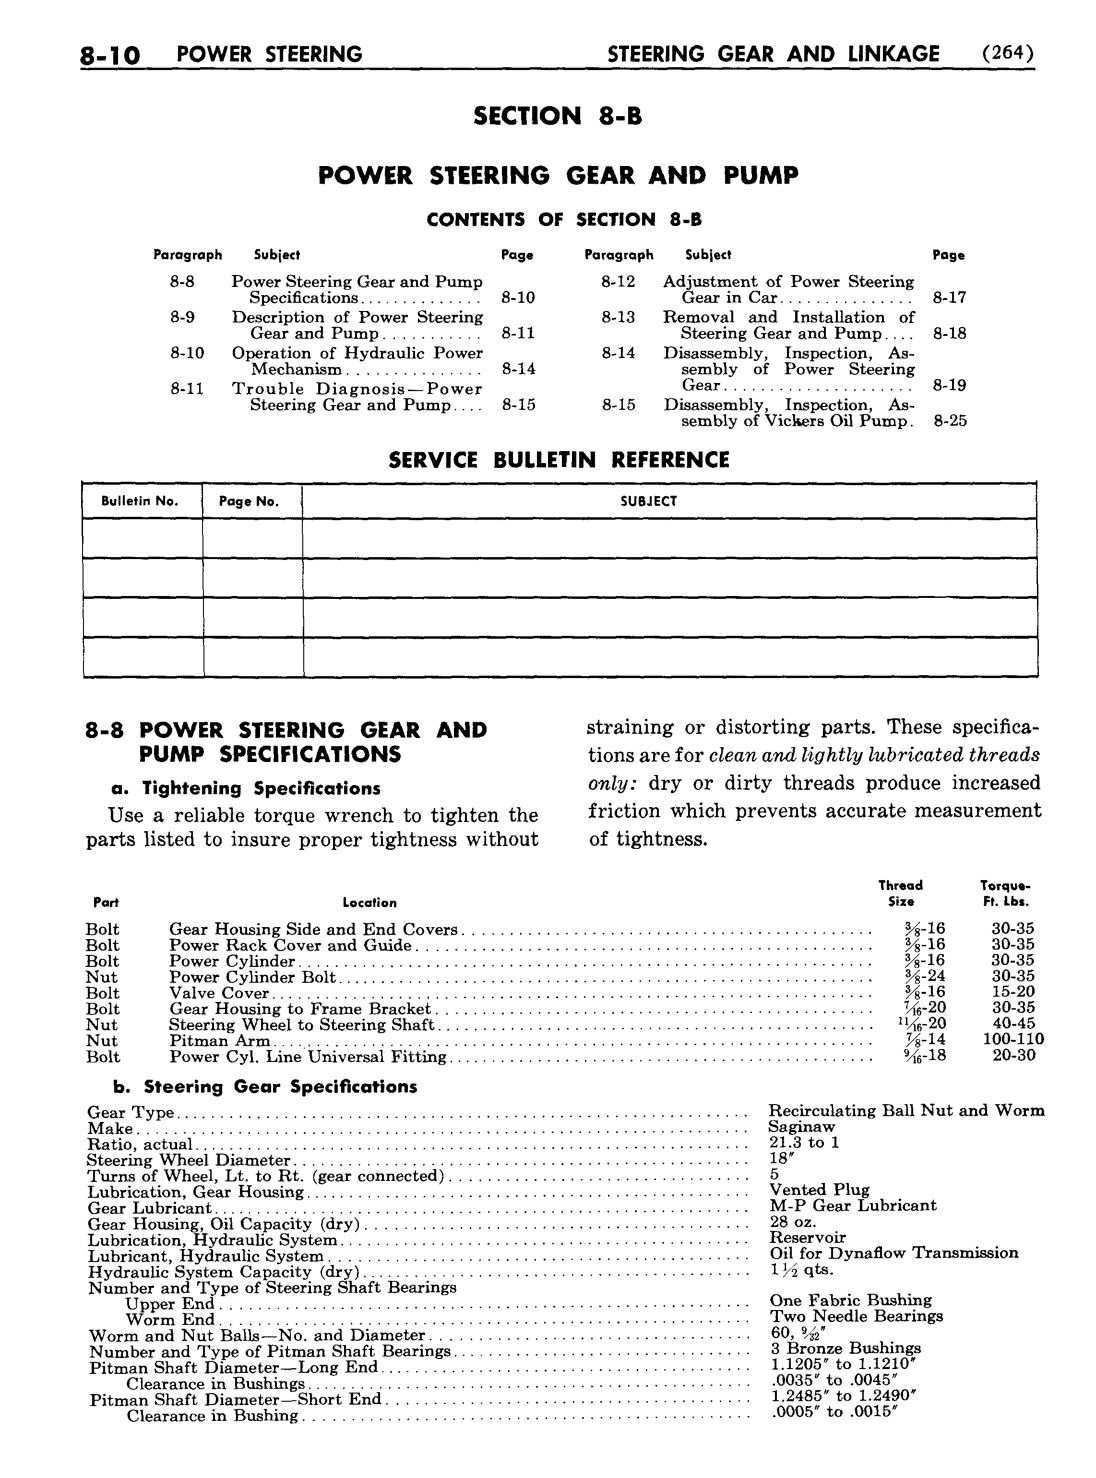 n_09 1954 Buick Shop Manual - Steering-010-010.jpg